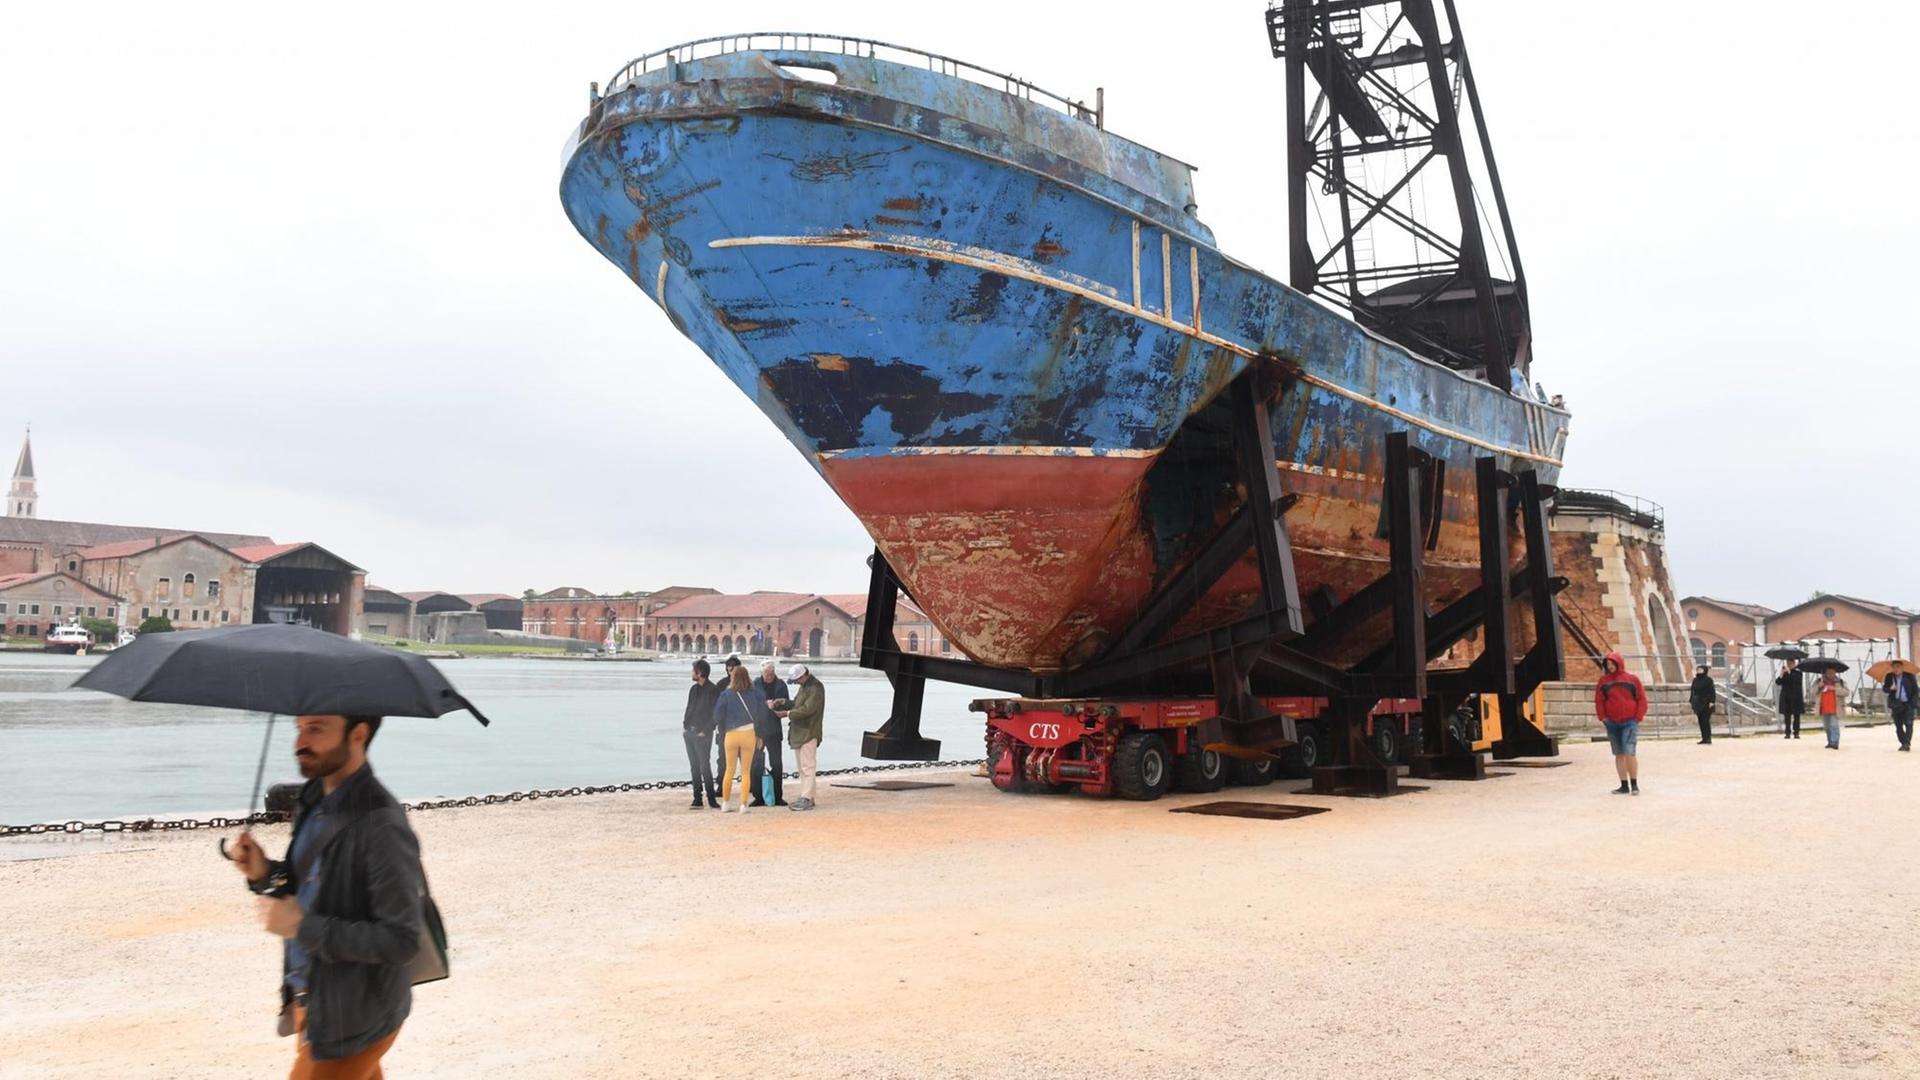 Das Wrack der Barca Nostra, ein im Jahr 2015 versunkenes Schiff, das 800 Migranten an Bord hatte, ist nun als Kunstinstallation in Venedig zu sehen.